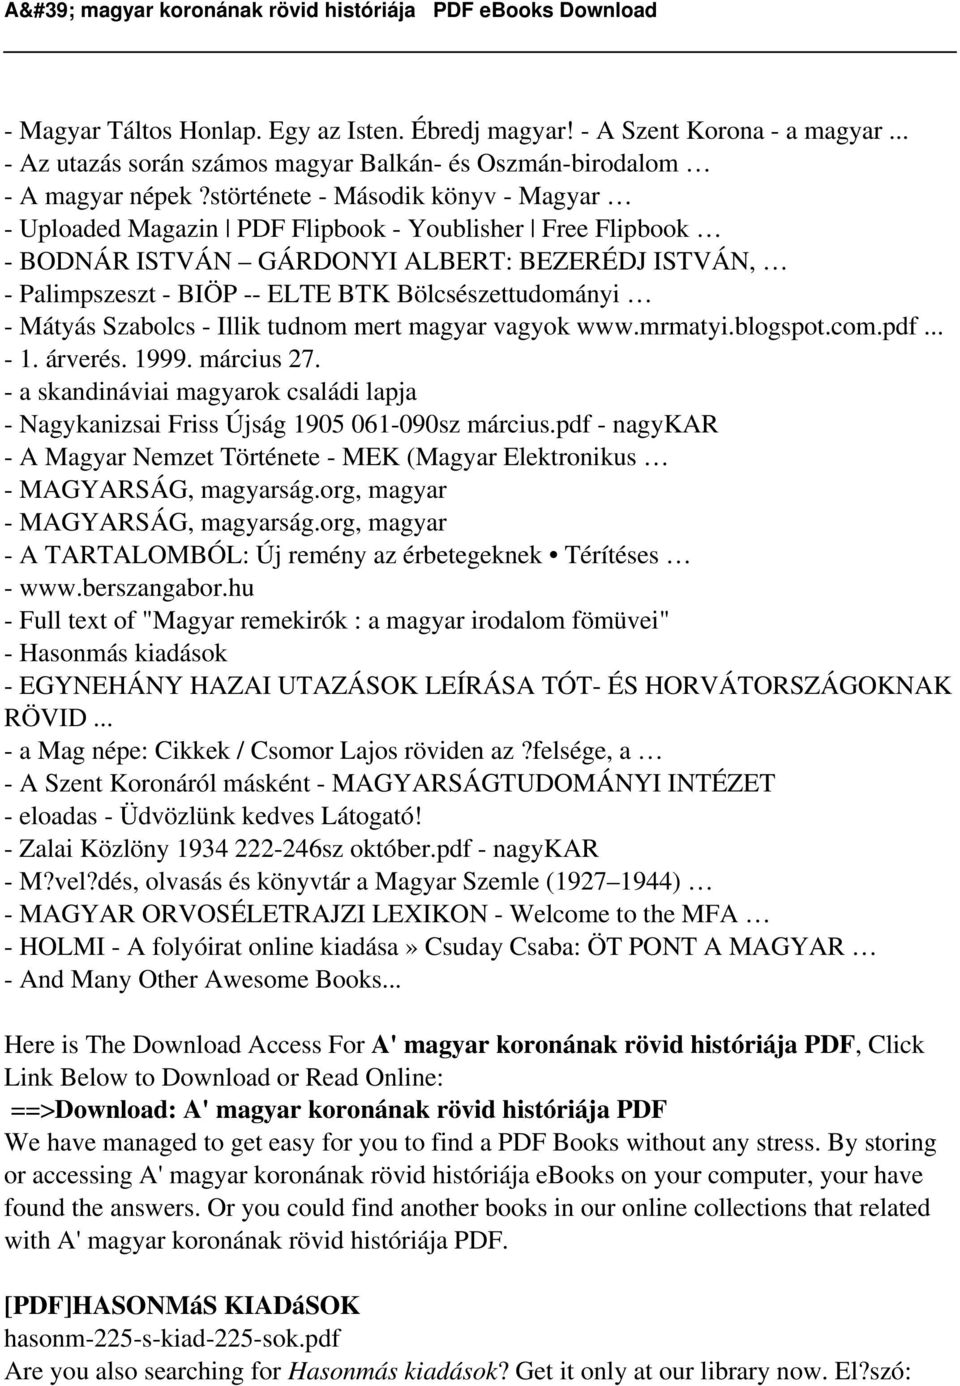 - Mátyás Szabolcs - Illik tudnom mert magyar vagyok www.mrmatyi.blogspot.com.pdf... - 1. árverés. 1999. március 27.